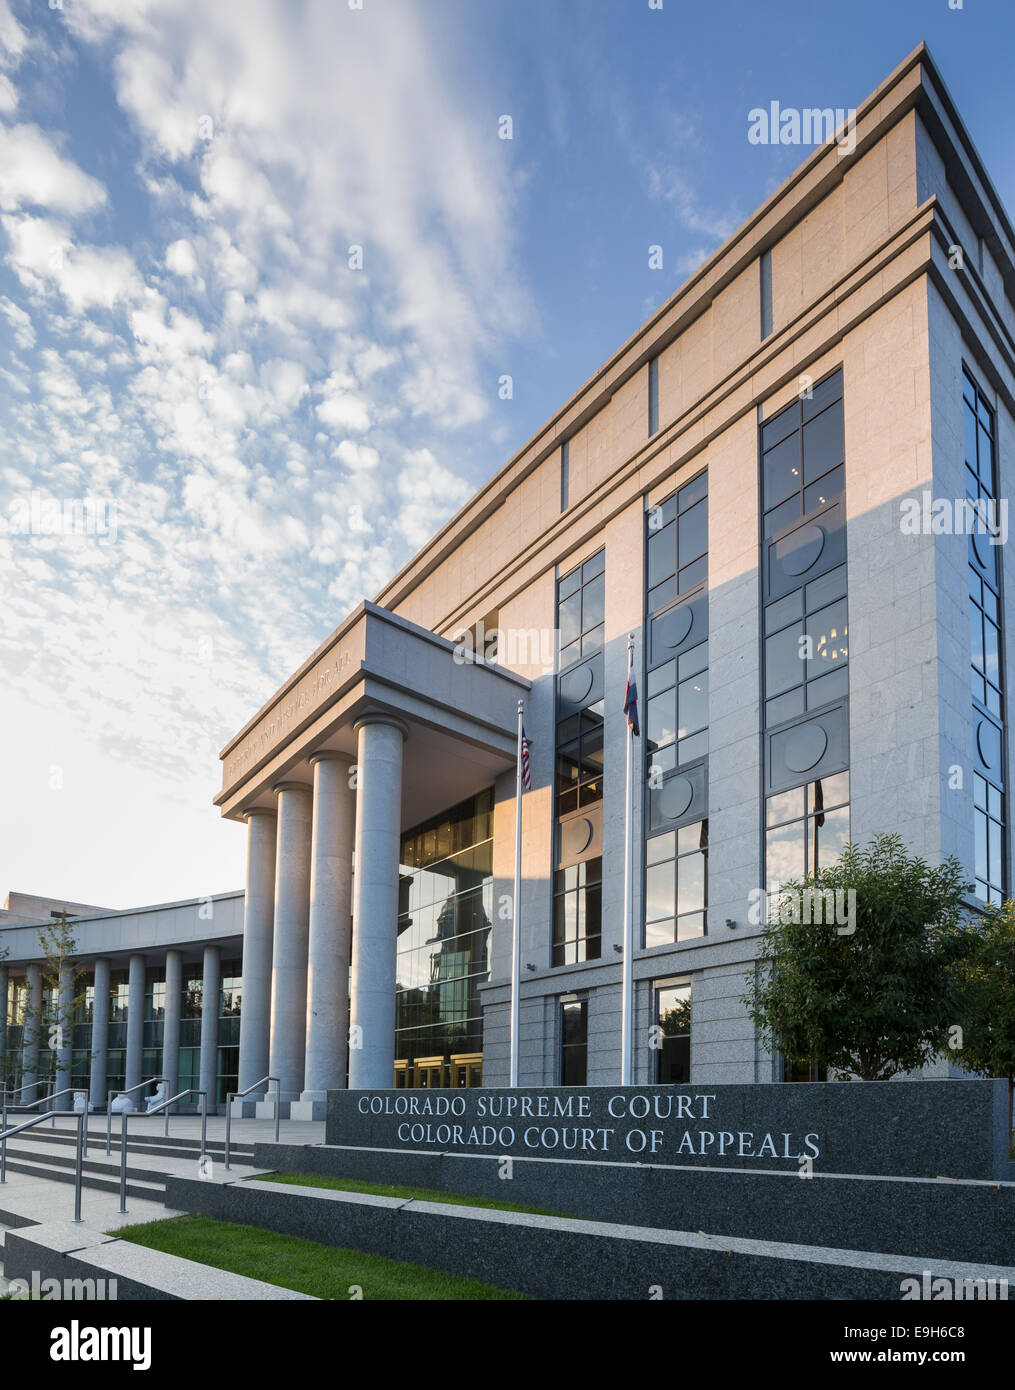 Colorado Supreme Court and Court of Appeals building, Denver, Colorado, USA Stock Photo